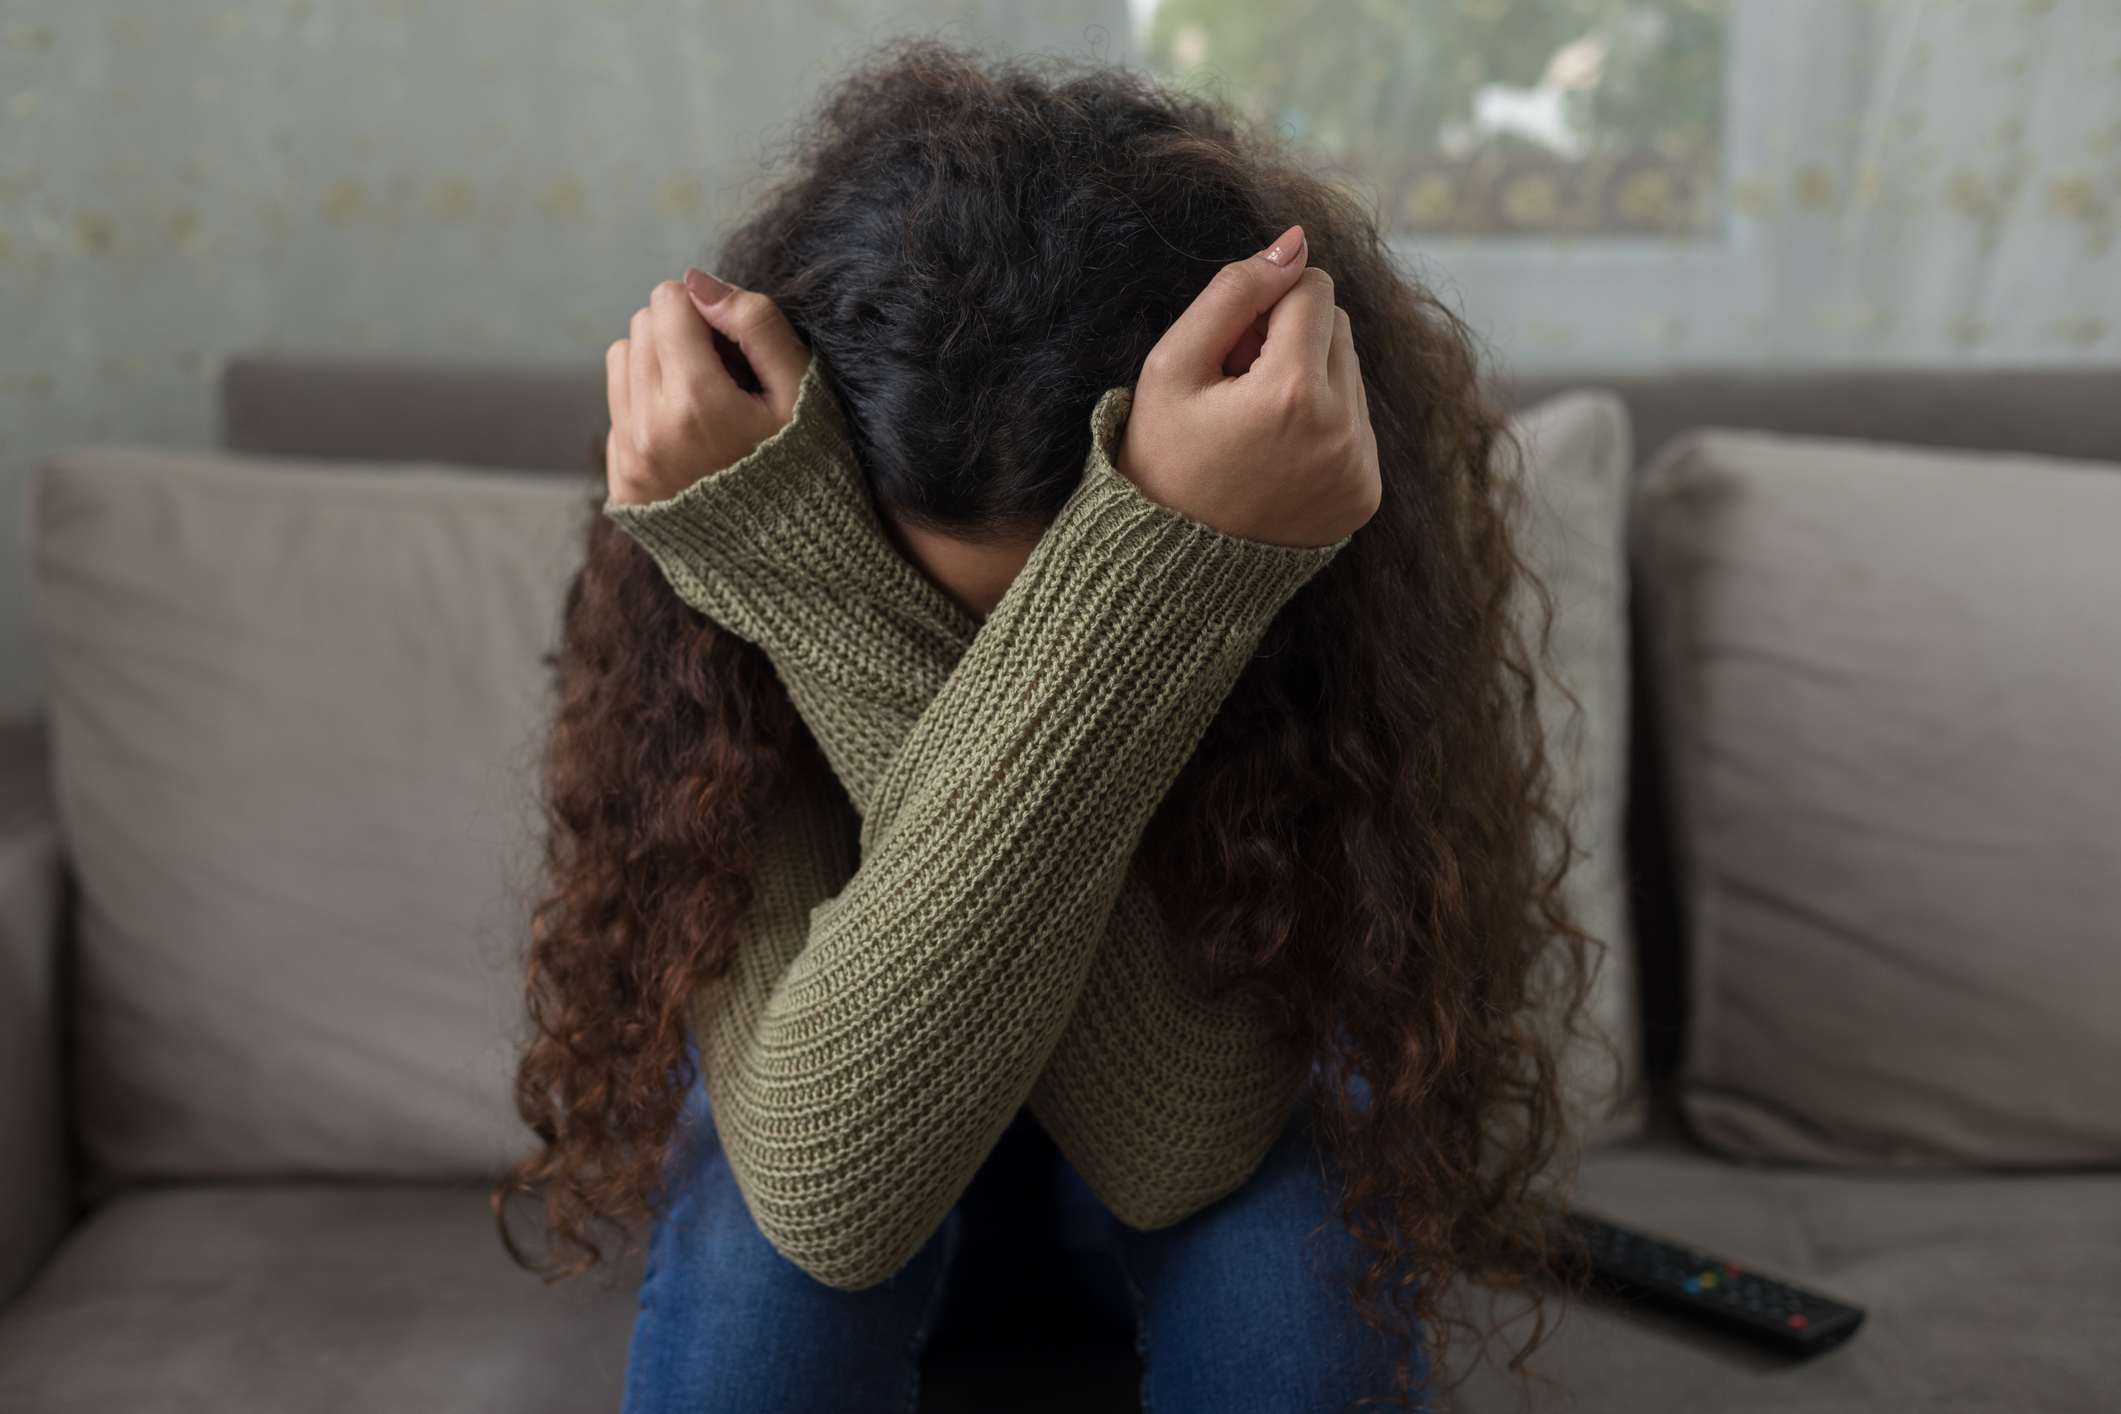 Χαϊδάρι: «Φώναζε ότι θα με μαχαιρώσει» λέει η 16χρονη που πήγε να πέσει θύμα απαγωγής